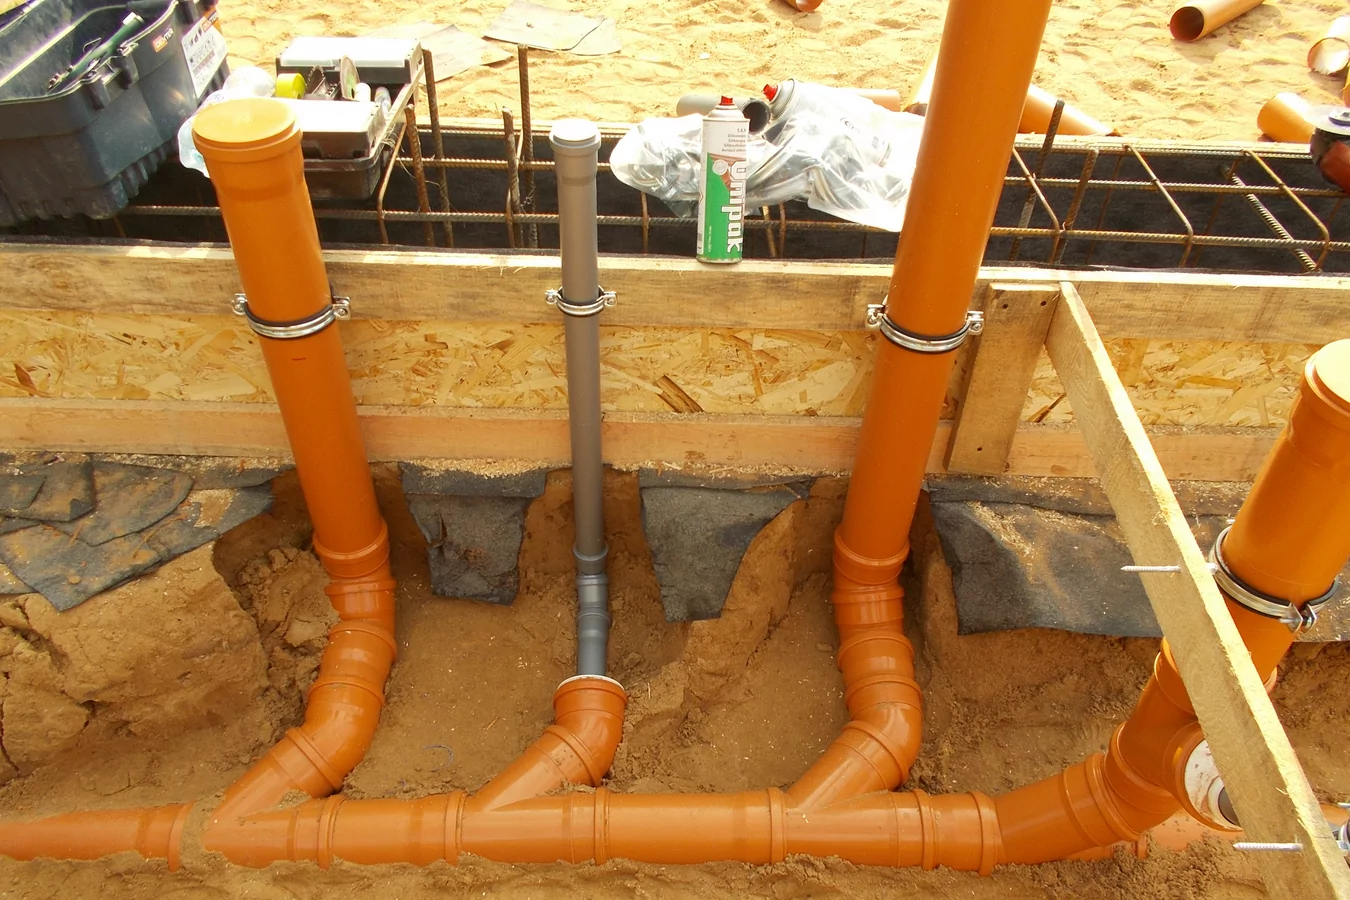 Какие лучше выбрать канализационные трубы: пвх или чугунные, плюсы и минусы